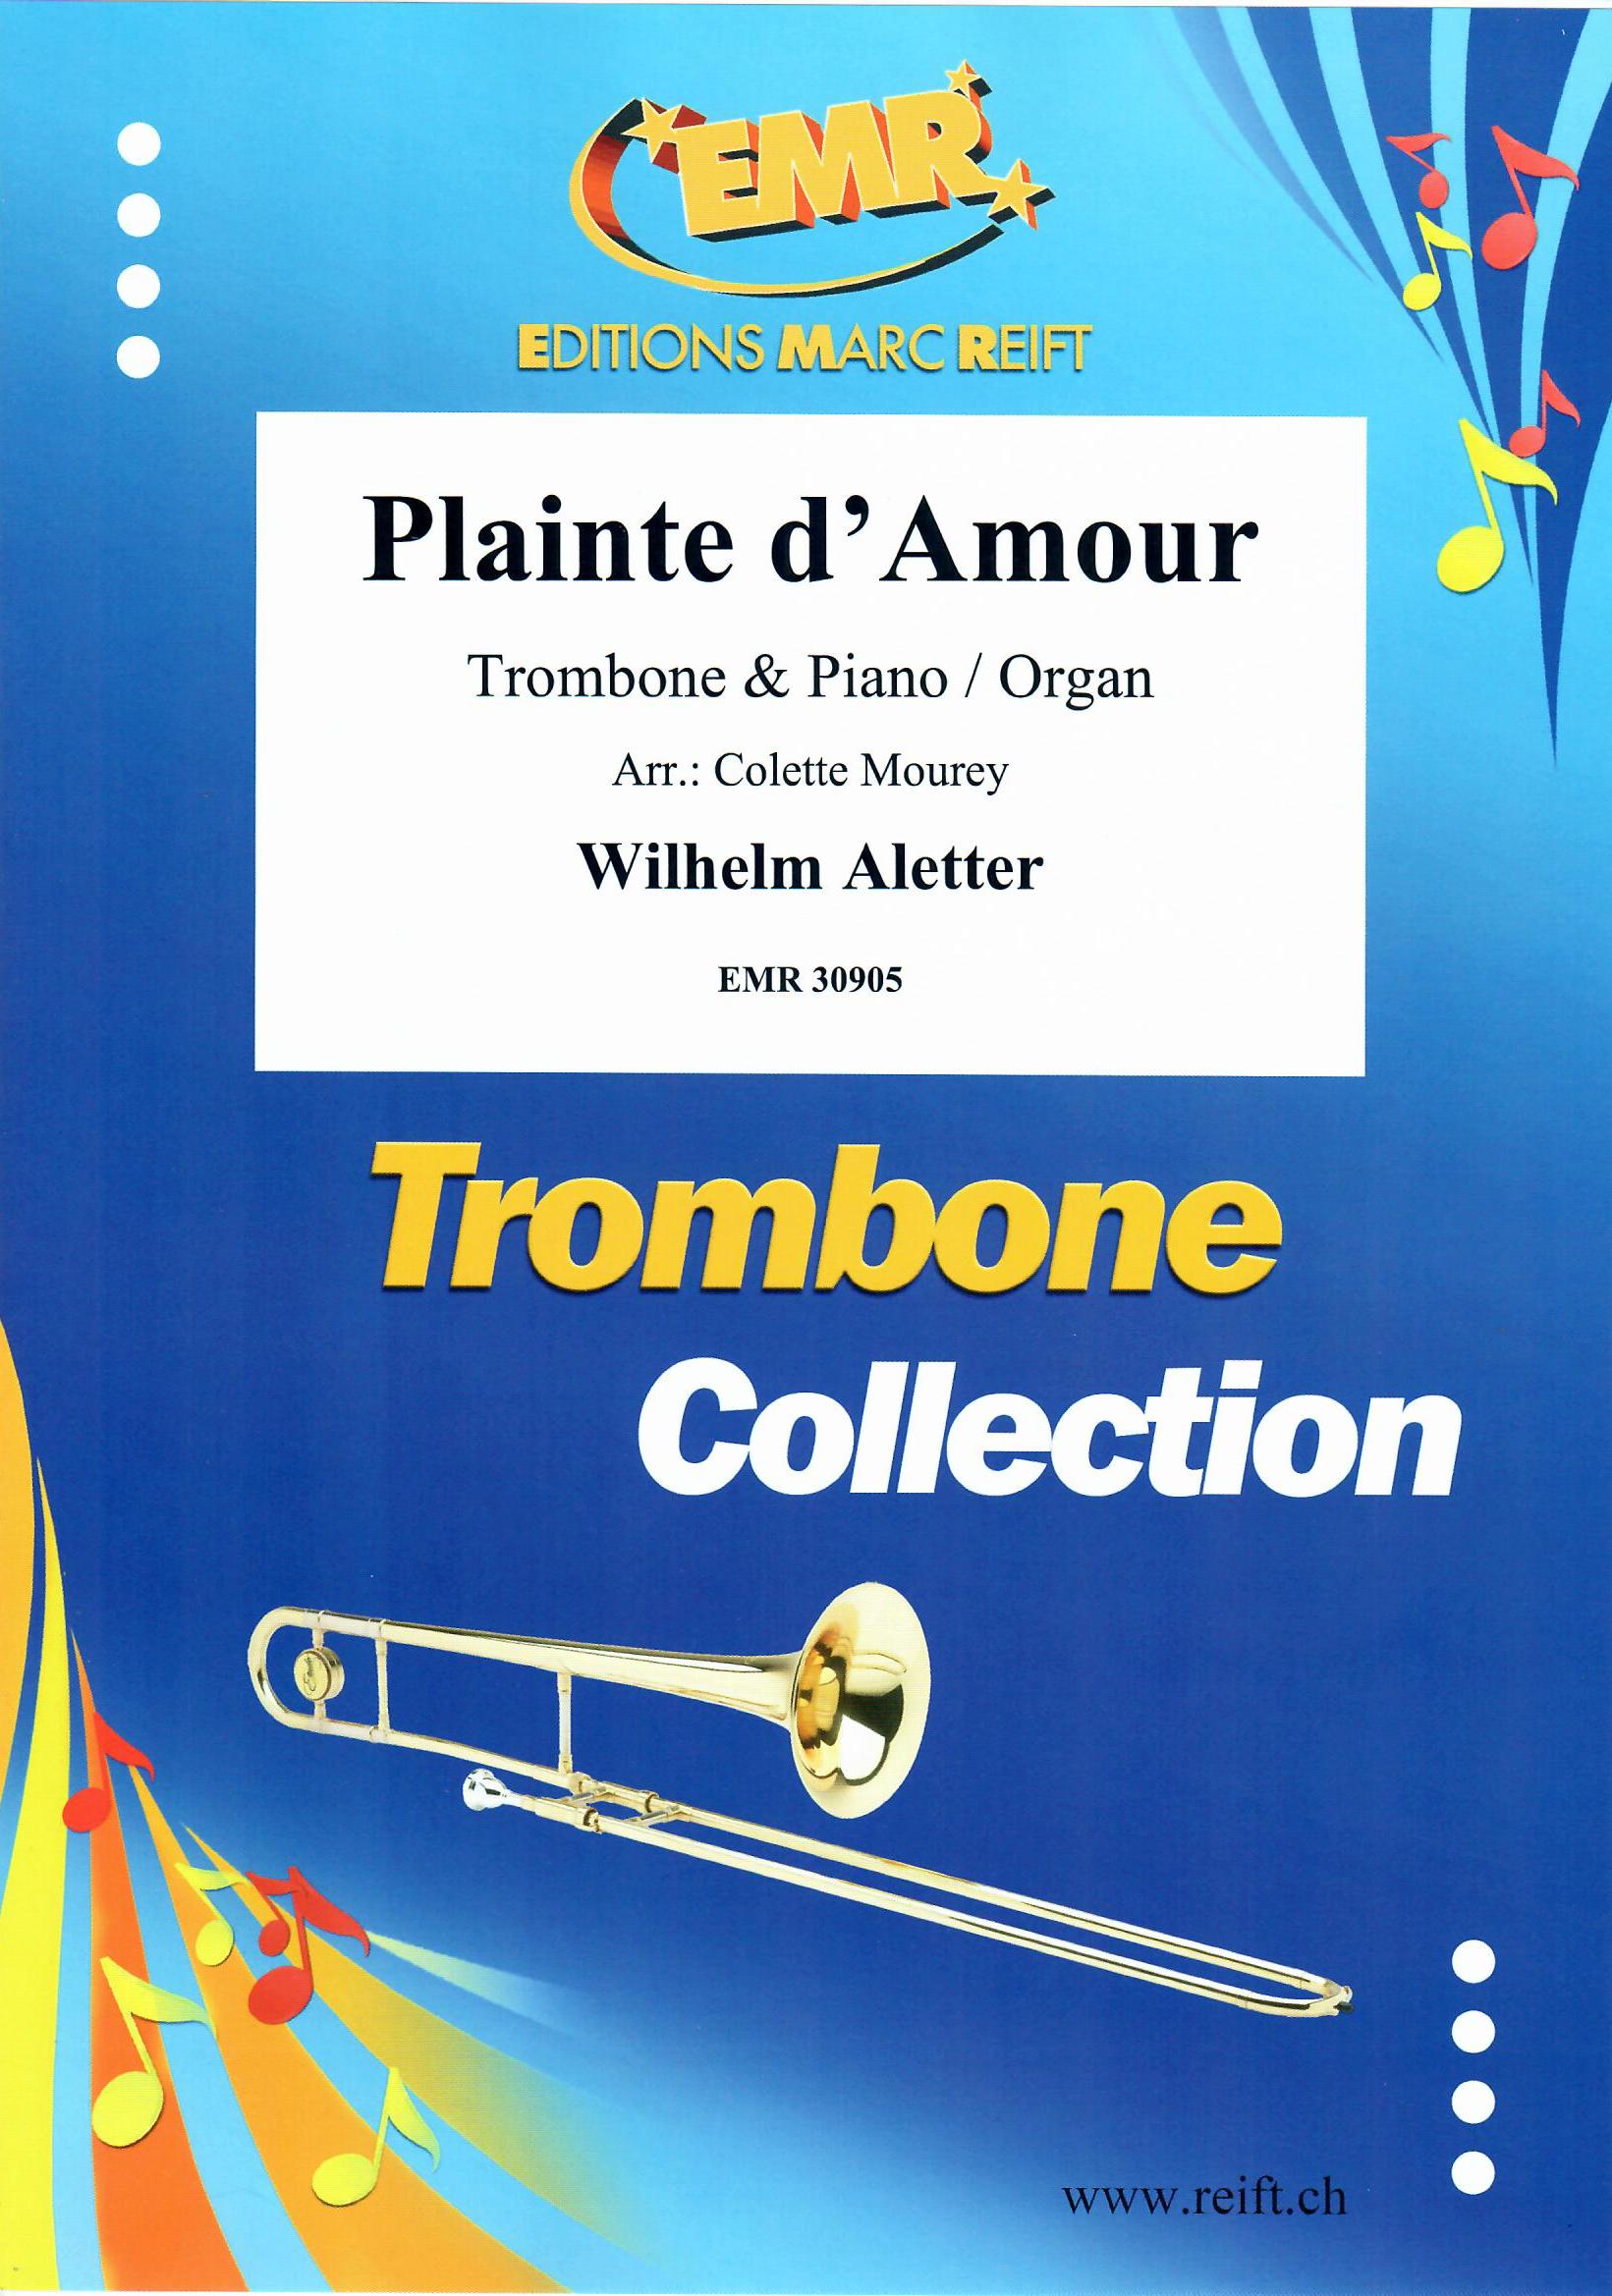 PLAINTE D'AMOUR, SOLOS - Trombone